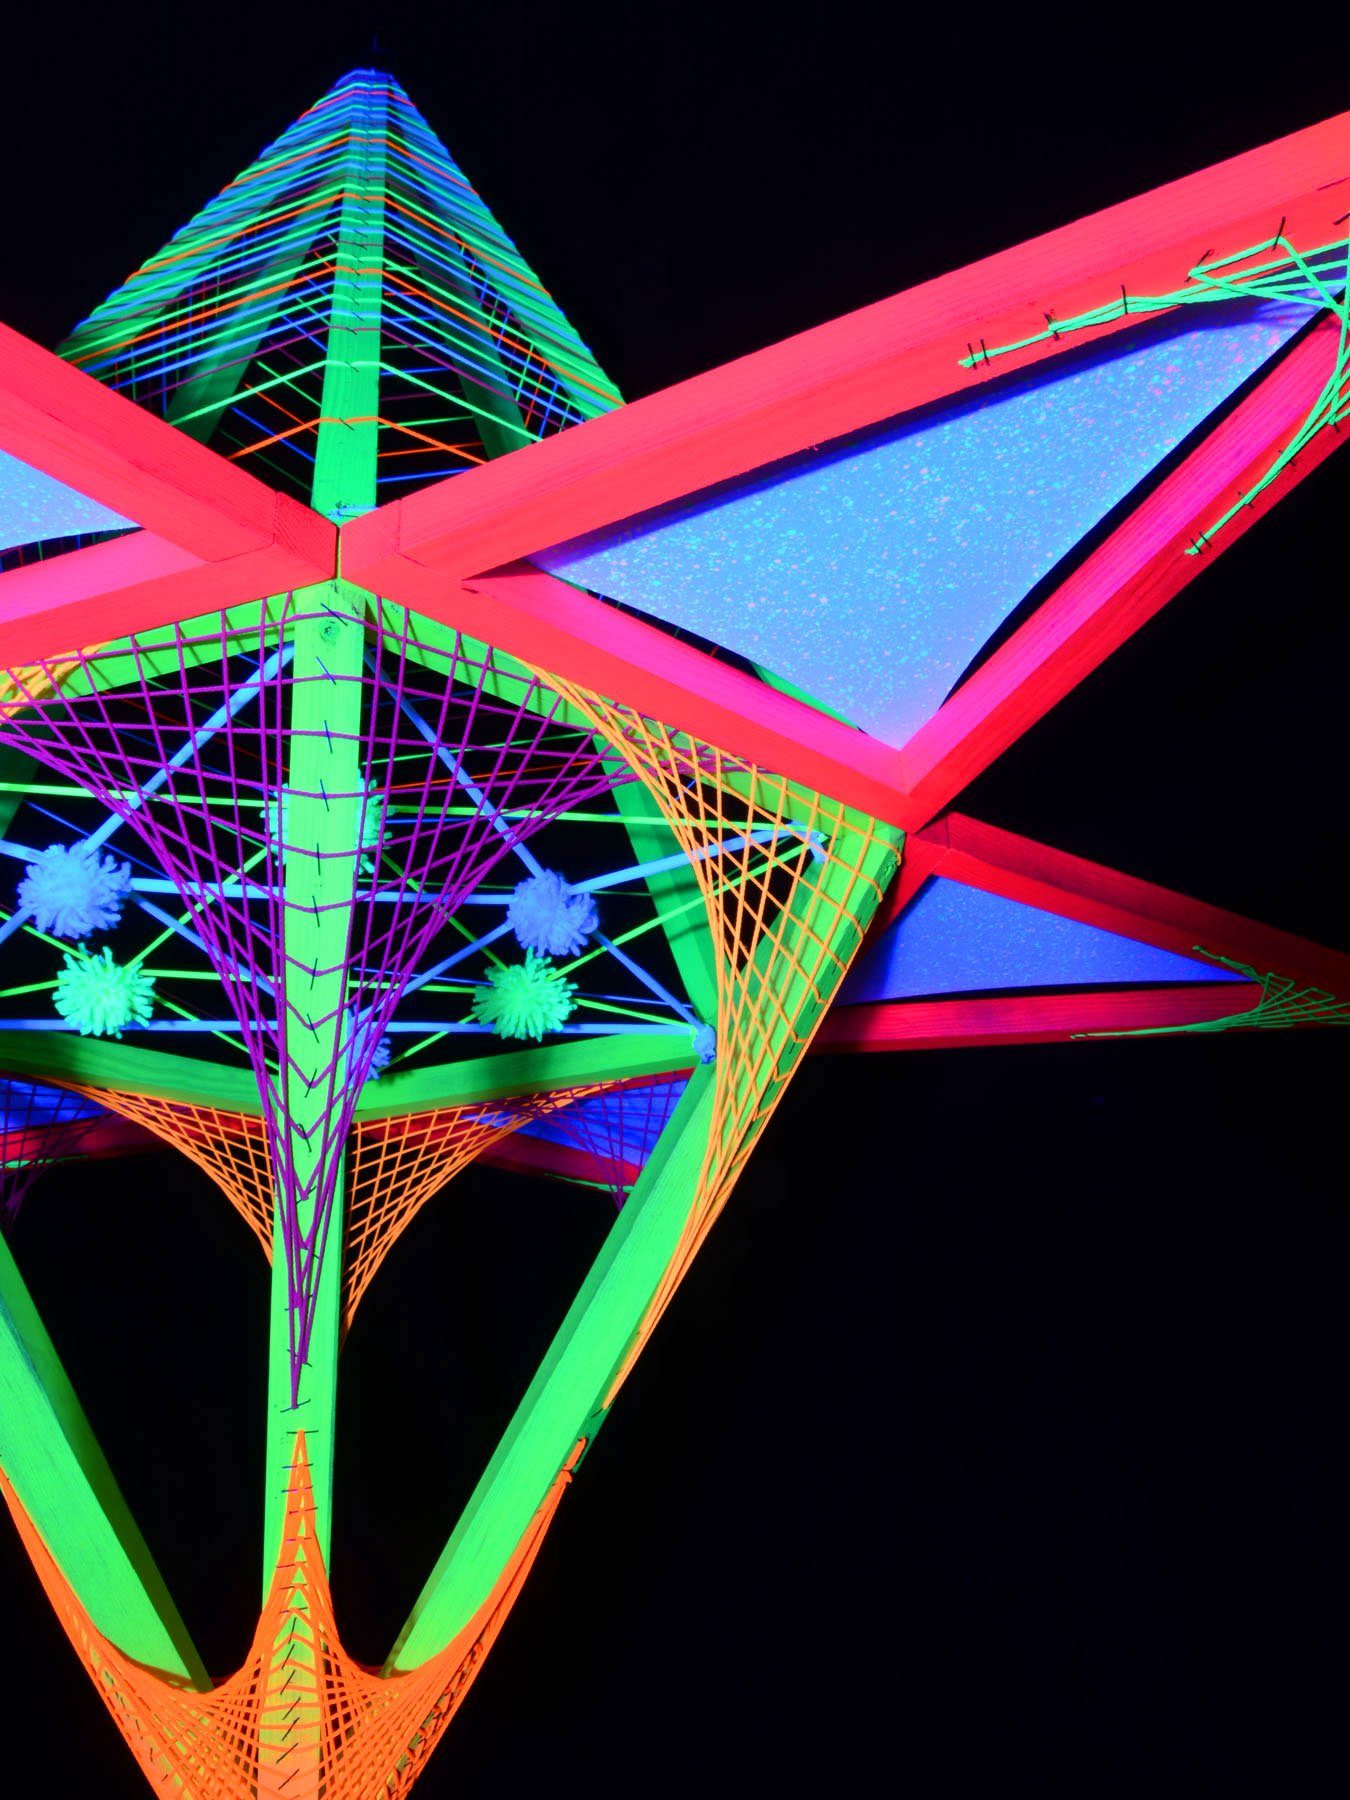 Schwarzlicht UV-aktiv, 3D Schwarzlicht Dekoobjekt leuchtet "Neon Flower" Dreiecken Sechseck mit 1,30m, PSYWORK StringArt unter